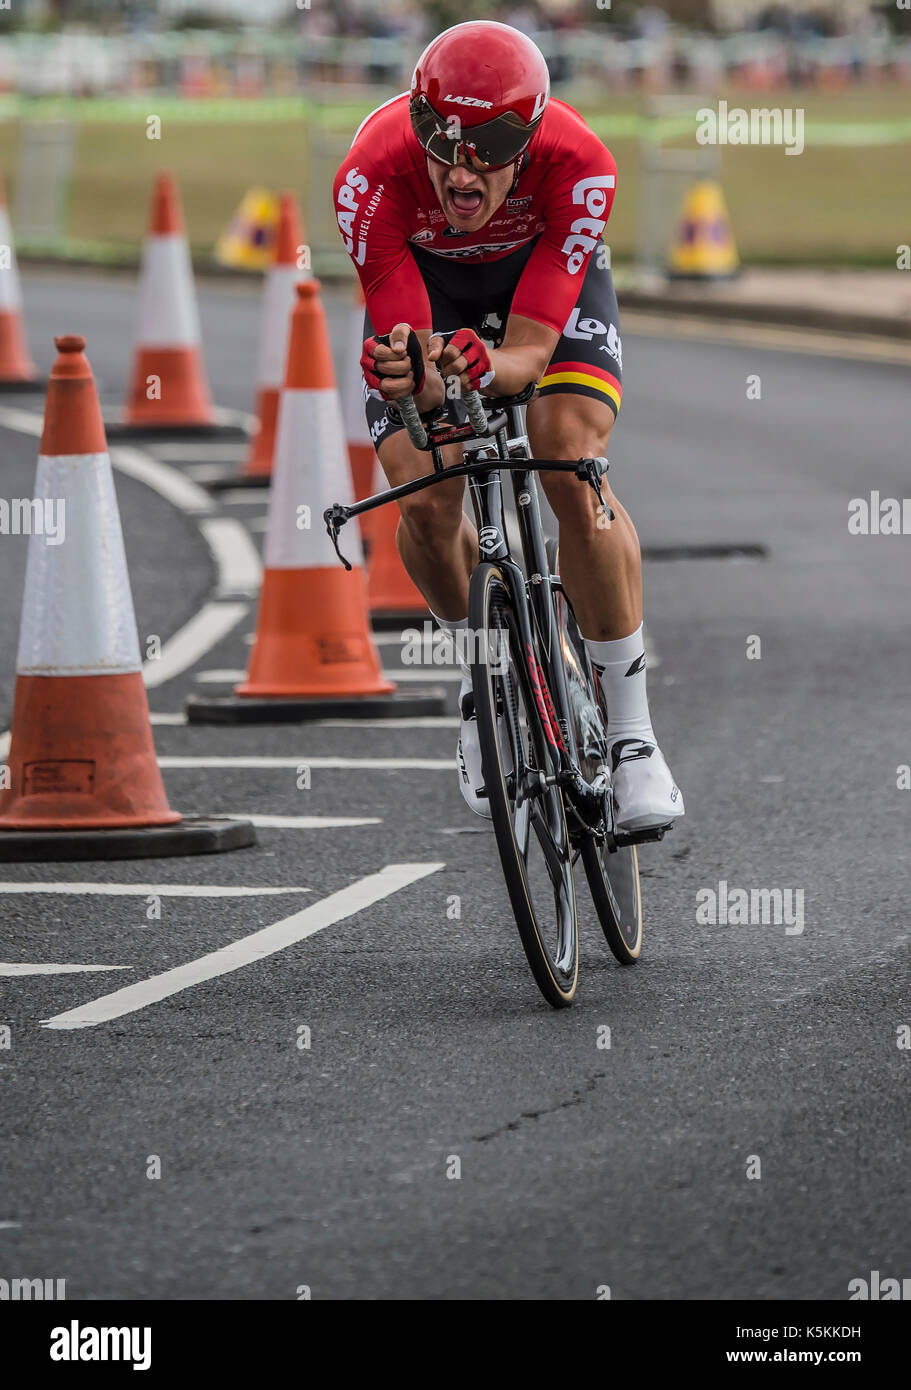 Nikolas MAES, Lotto Soudal,Tour of Britain cycle race stage 5 timetrial at Clacton on sea, UK. Stock Photo